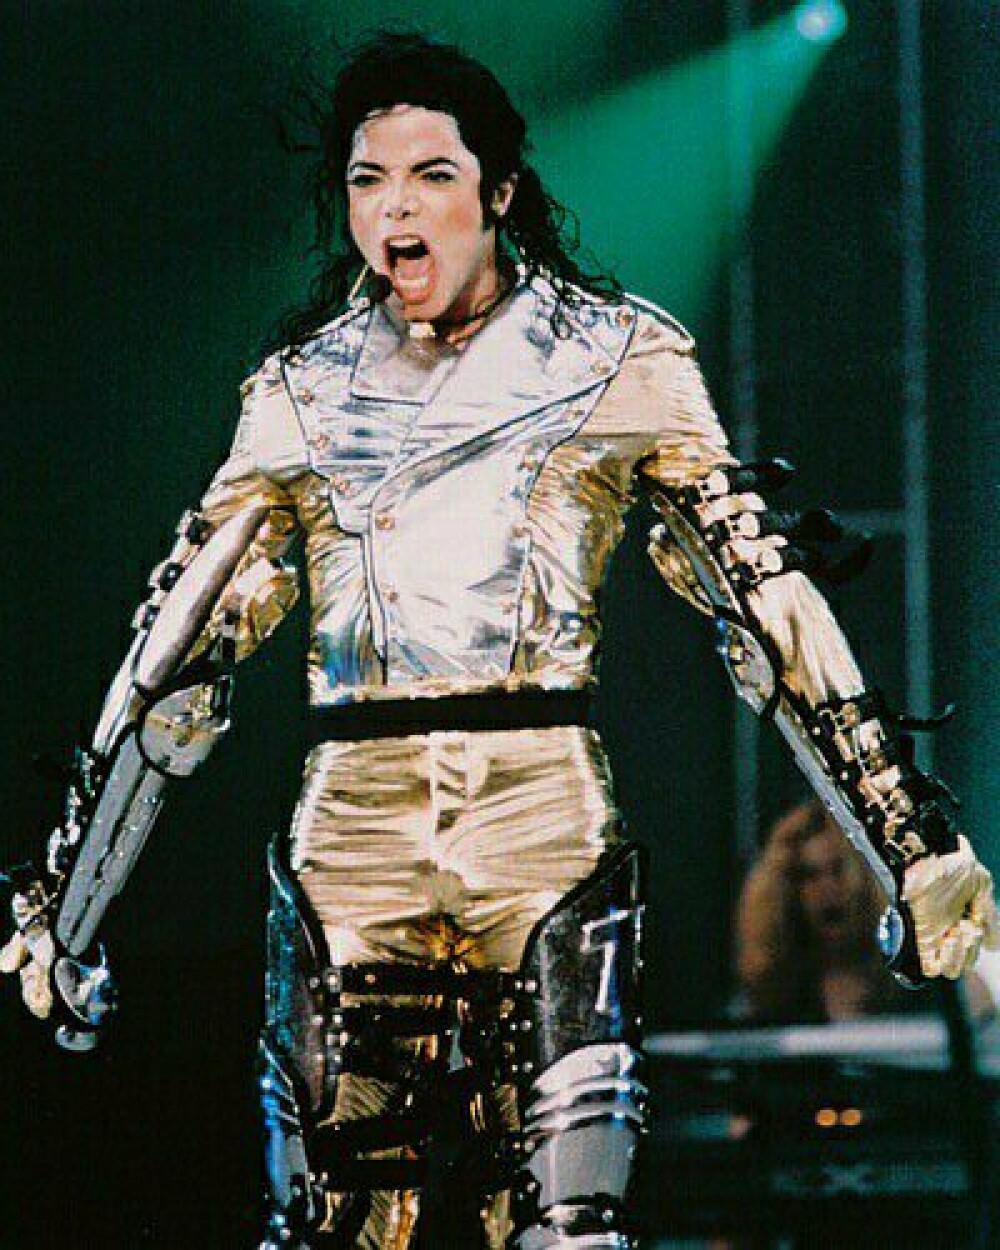 Michael Jackson ar fi implinit azi 52 de ani! Recorduri si controverse - Imaginea 5